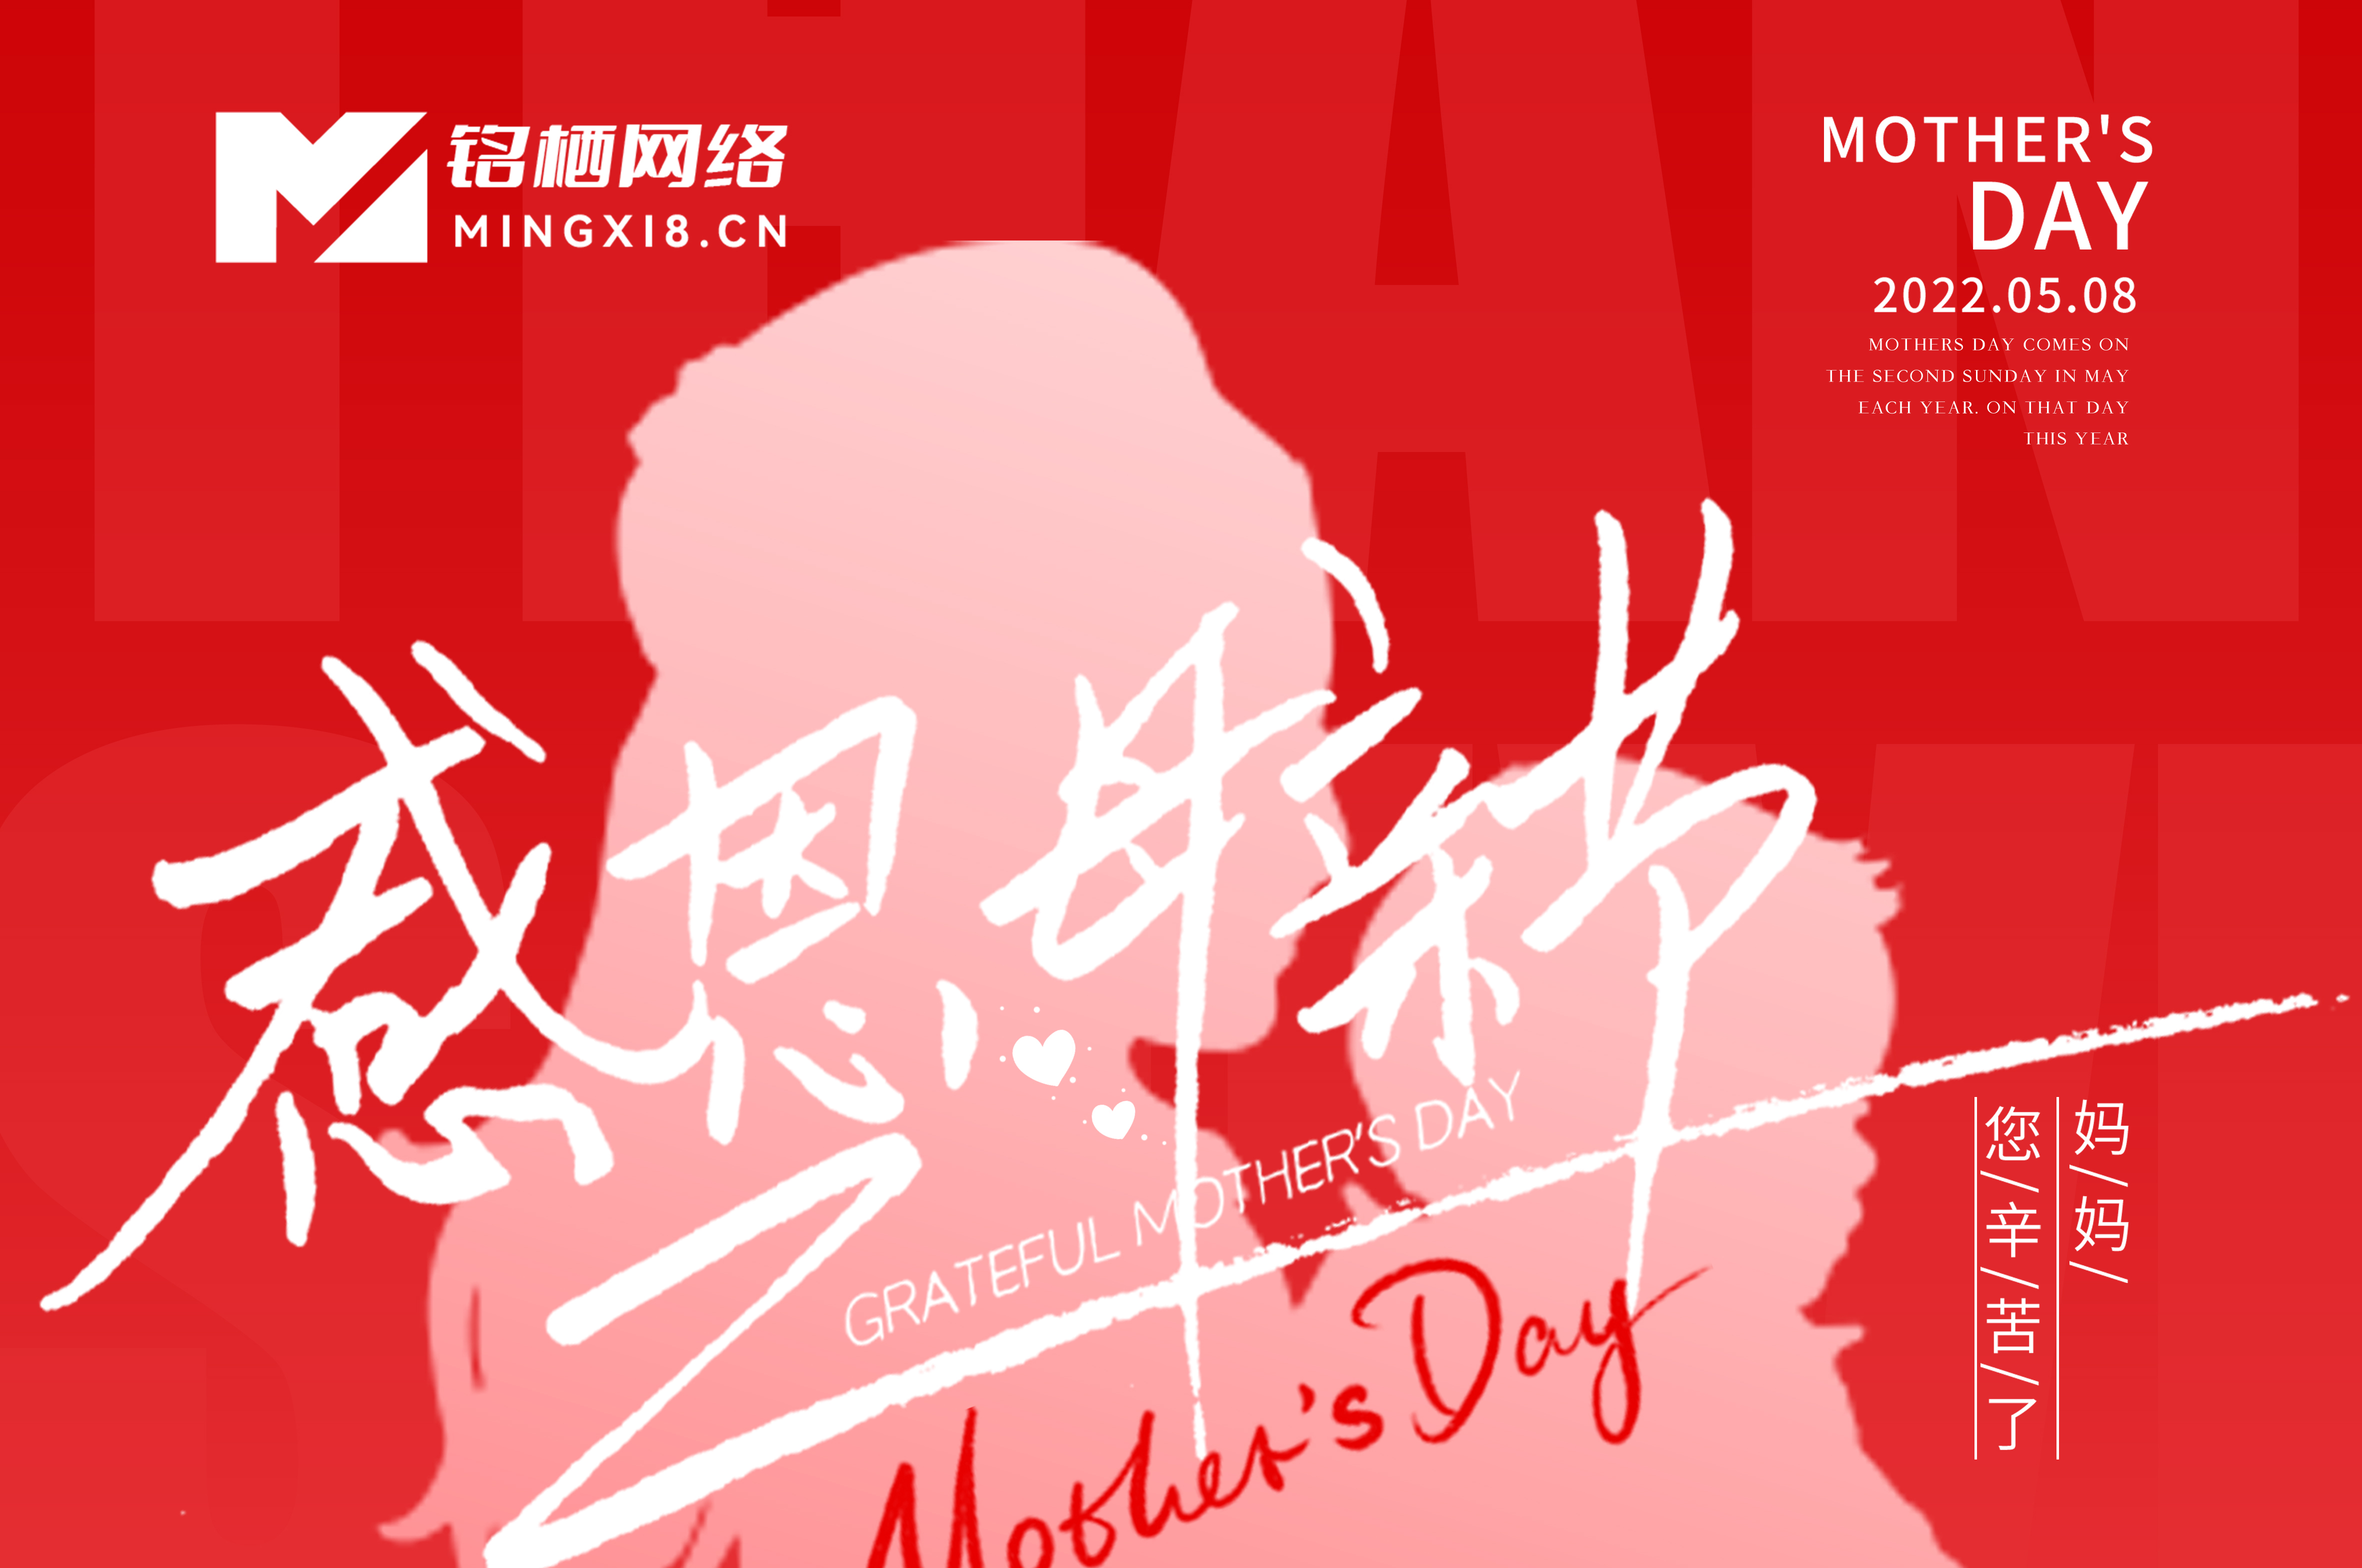 上海铭栖网络科技祝所有母亲--母亲节快乐